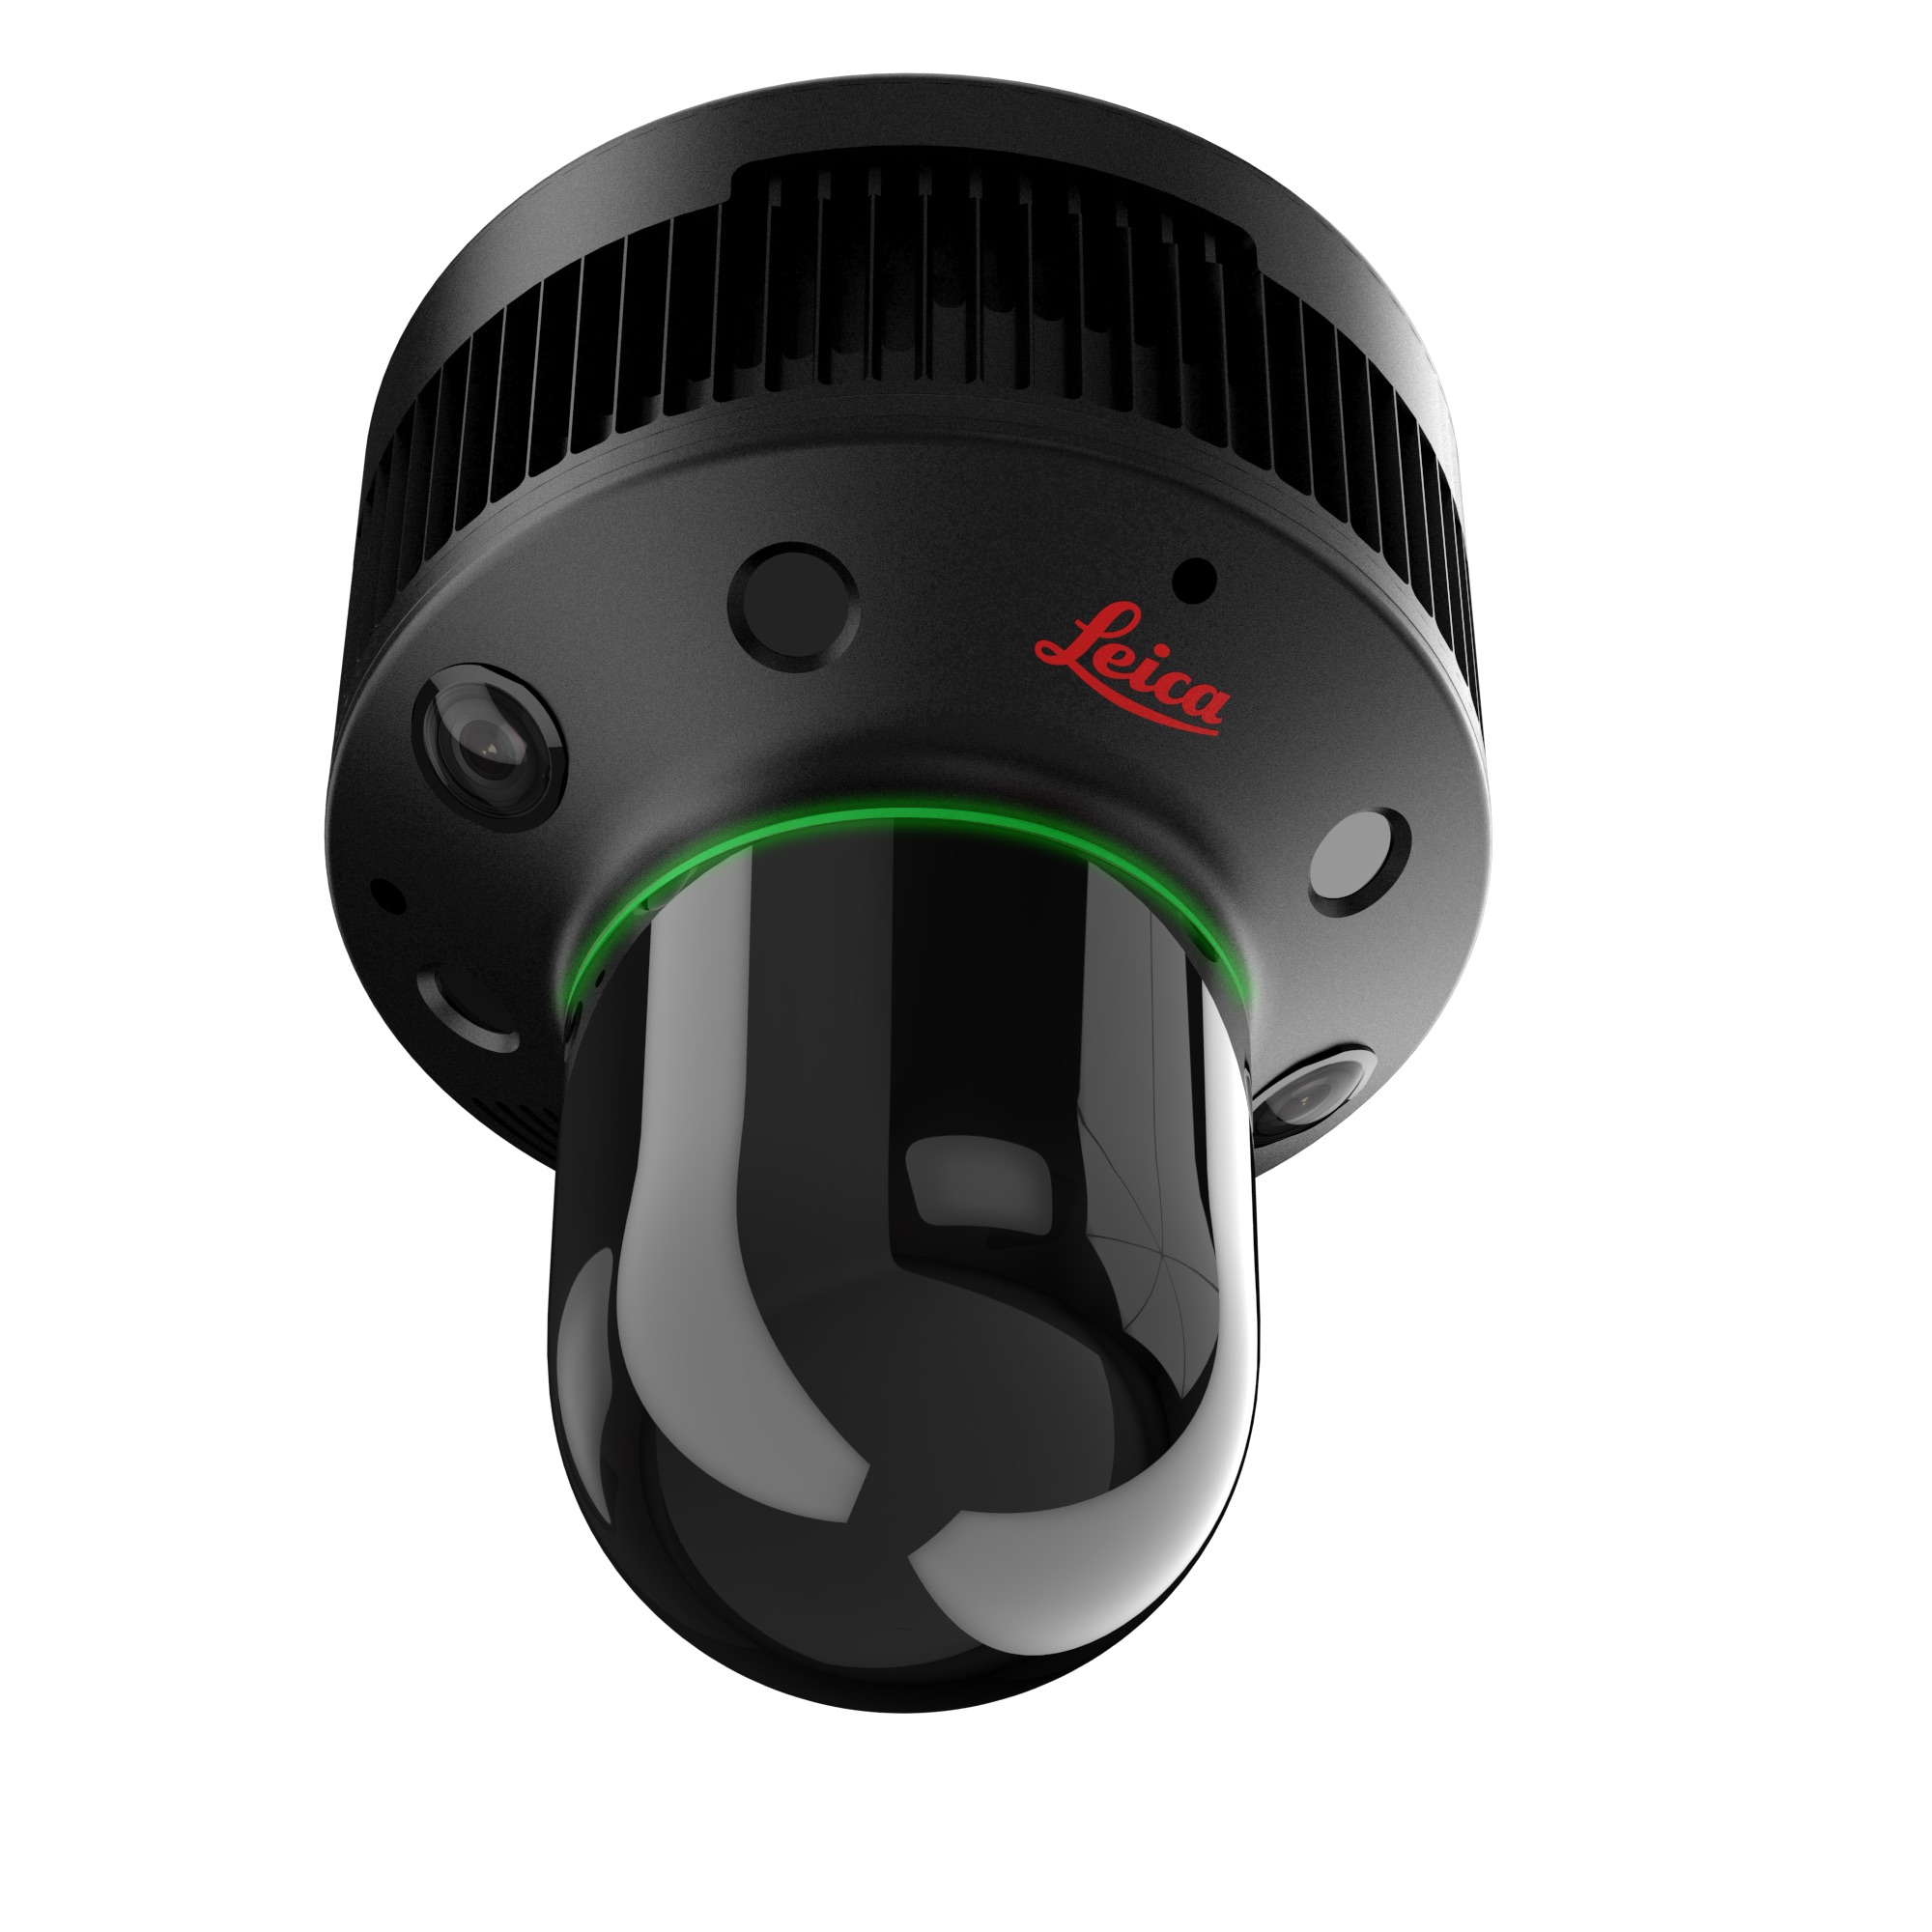 MUSE Design Winners - Leica BLK247: World’s First Smart 3D Surveillance System